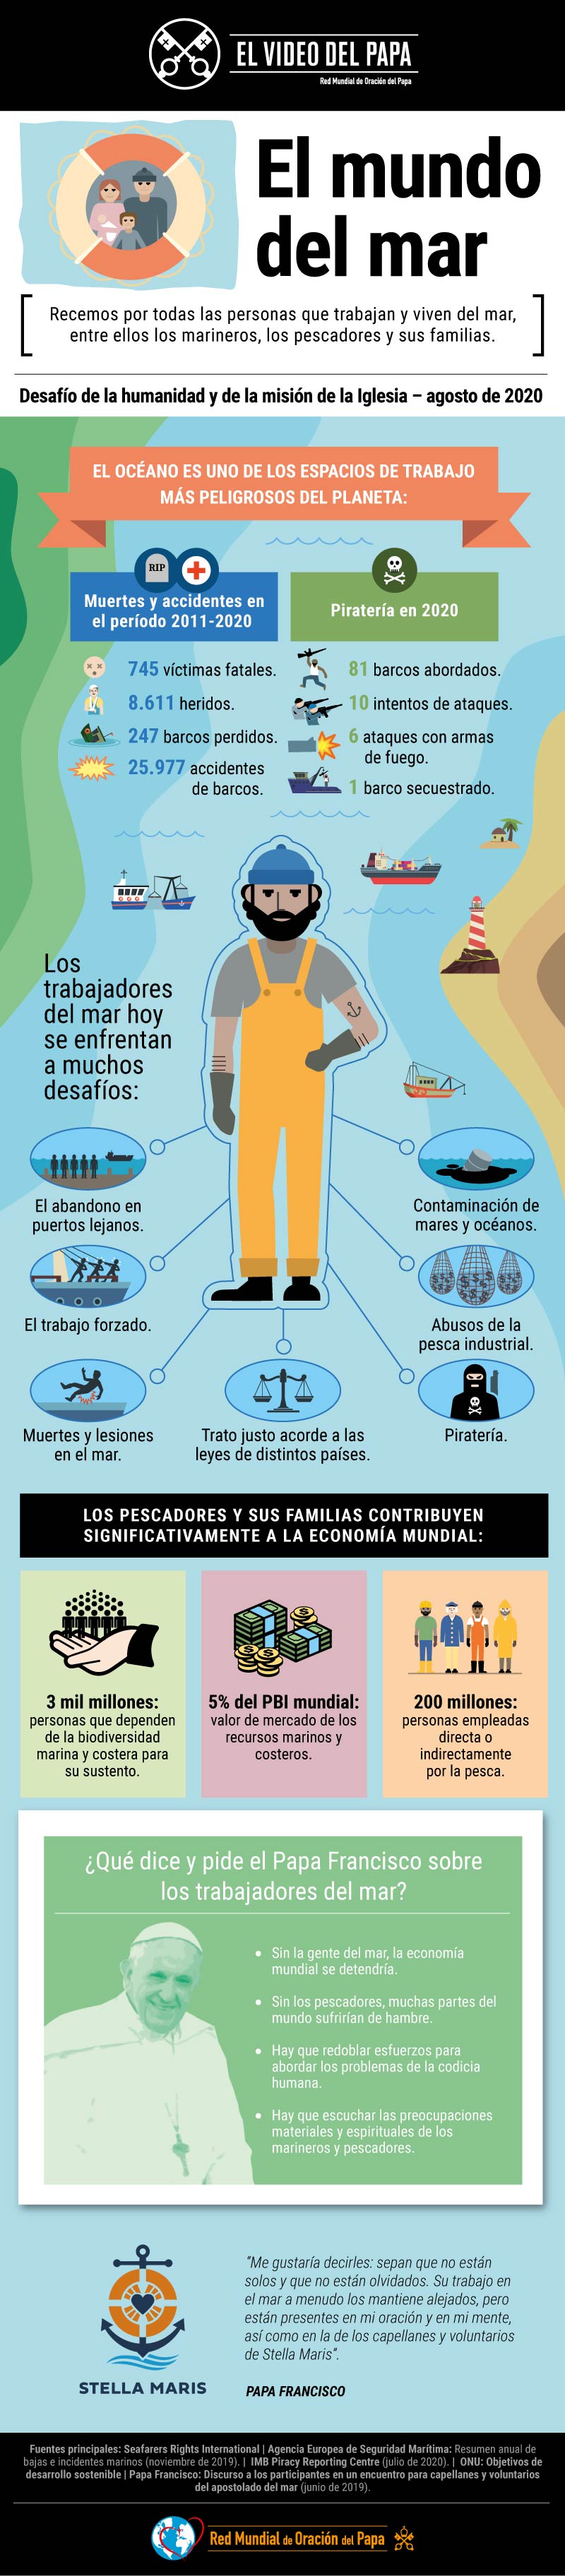 Infografía-TPV-8-2020-ES-El-Video-del-Papa-El-mundo-del-mar.jpg